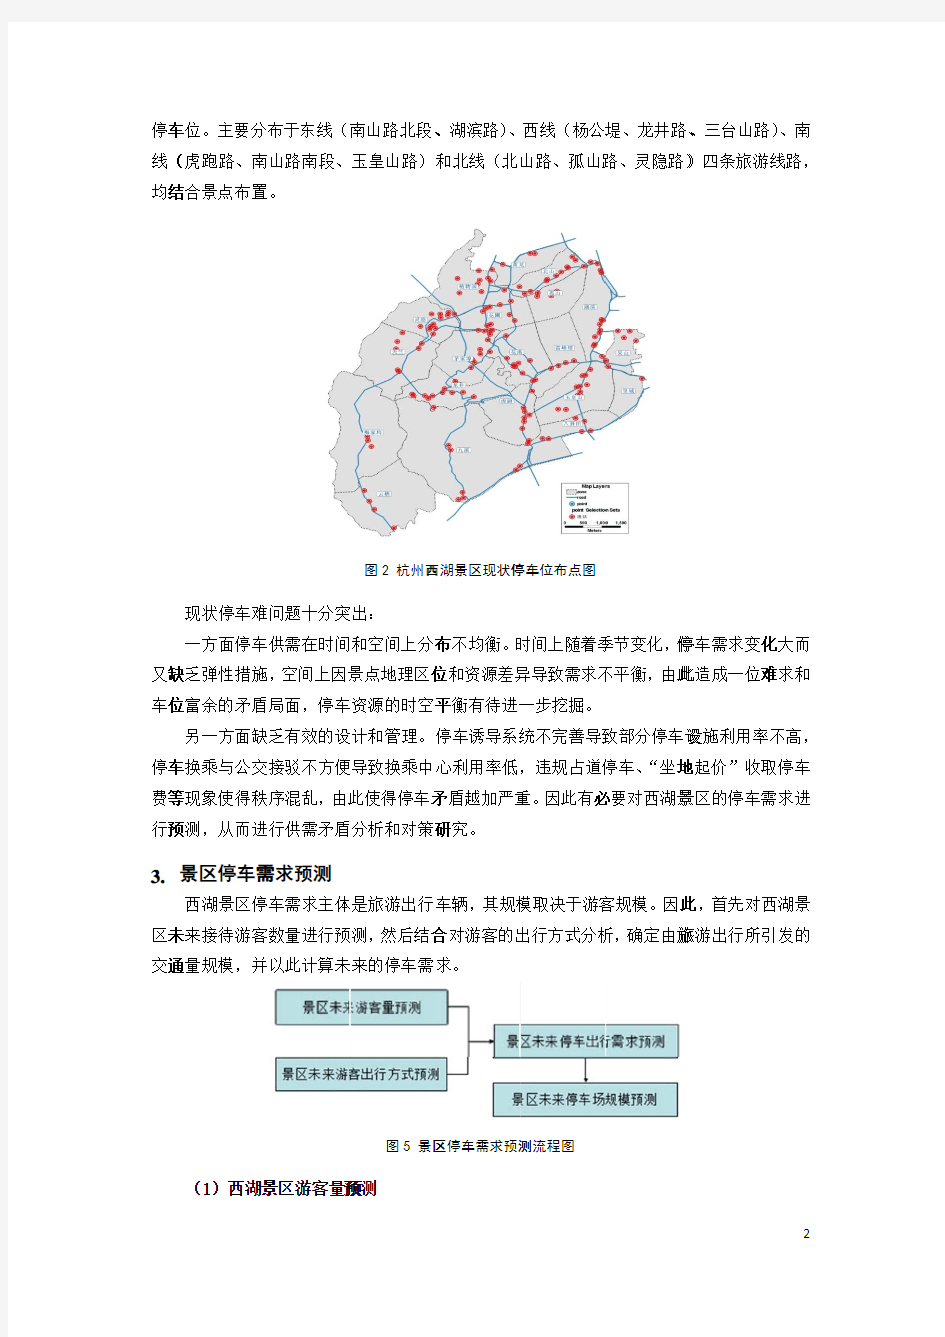 杭州西湖风景名胜区停车需求预测及对策研究